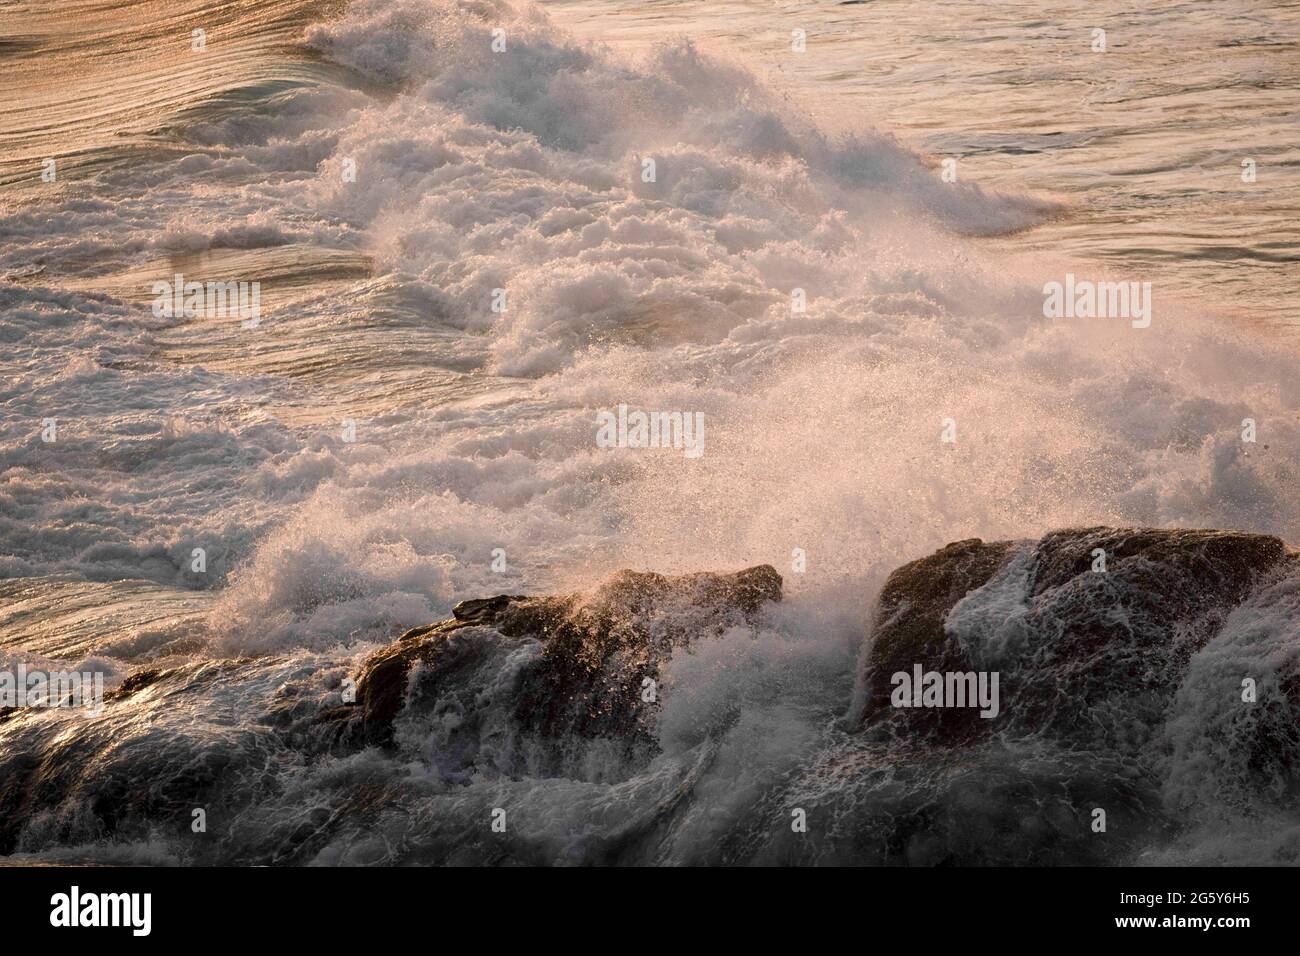 MAZUNTE, MEXIQUE - JUIN 9 : vue générale des vagues de la mer depuis la montagne à l'extrémité ouest de la plage de Mazunte connue sous le nom de Punta Cometa (pointe de cerf-volant) le 9 juin 2021 à Mazunte, Mexique. Crédit : Amaresh V. Narro/Eyepix Group/The photo Access Banque D'Images